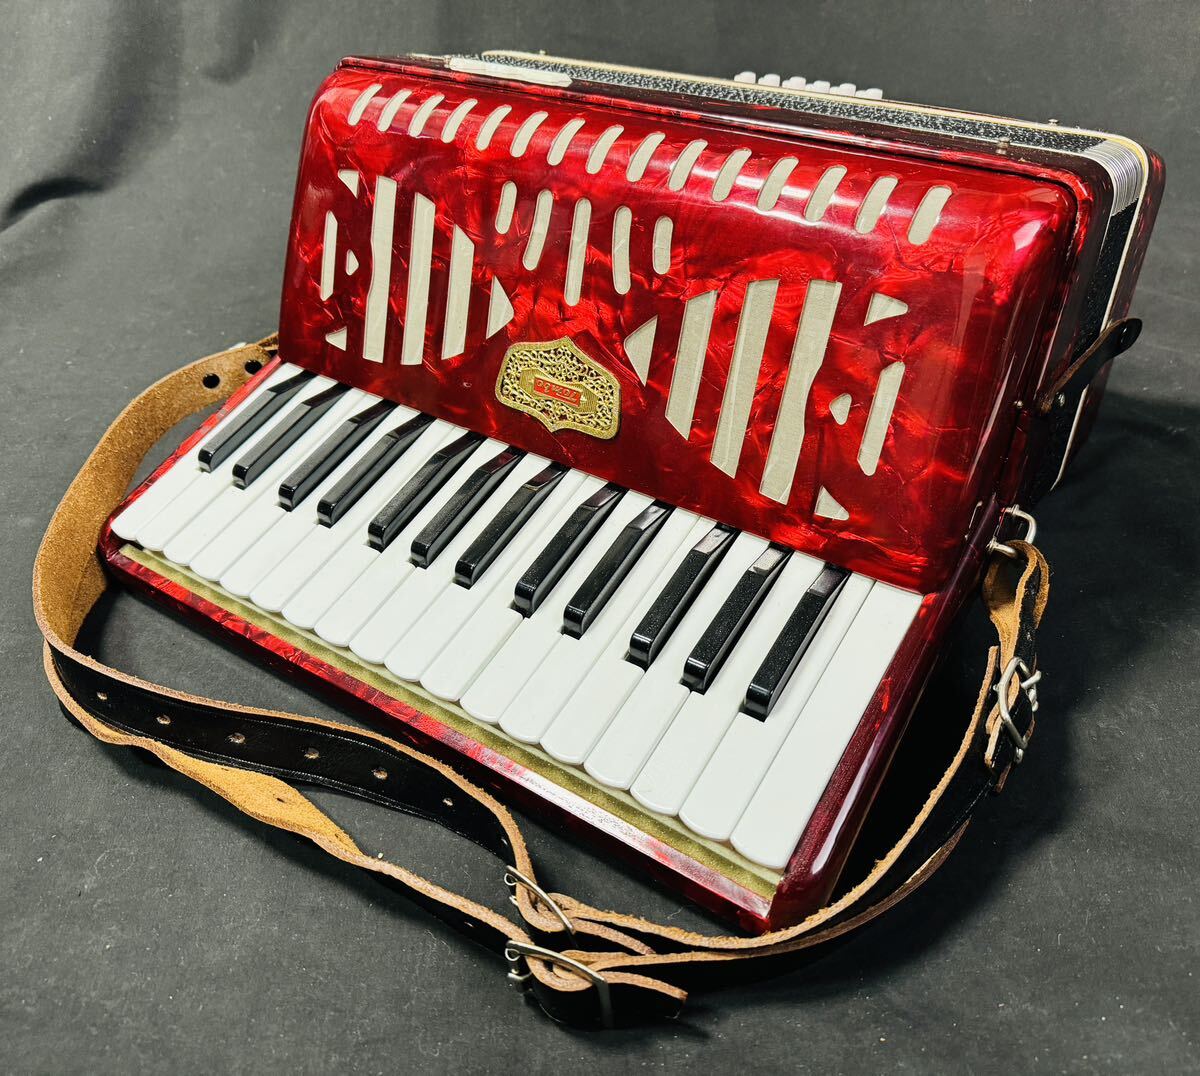 Ψアコーディオン TOMBO トンボ No.181 STEEL REDS 30鍵盤 レッド ハードケース付 鍵盤楽器 / 265606 / 517-4 _画像2